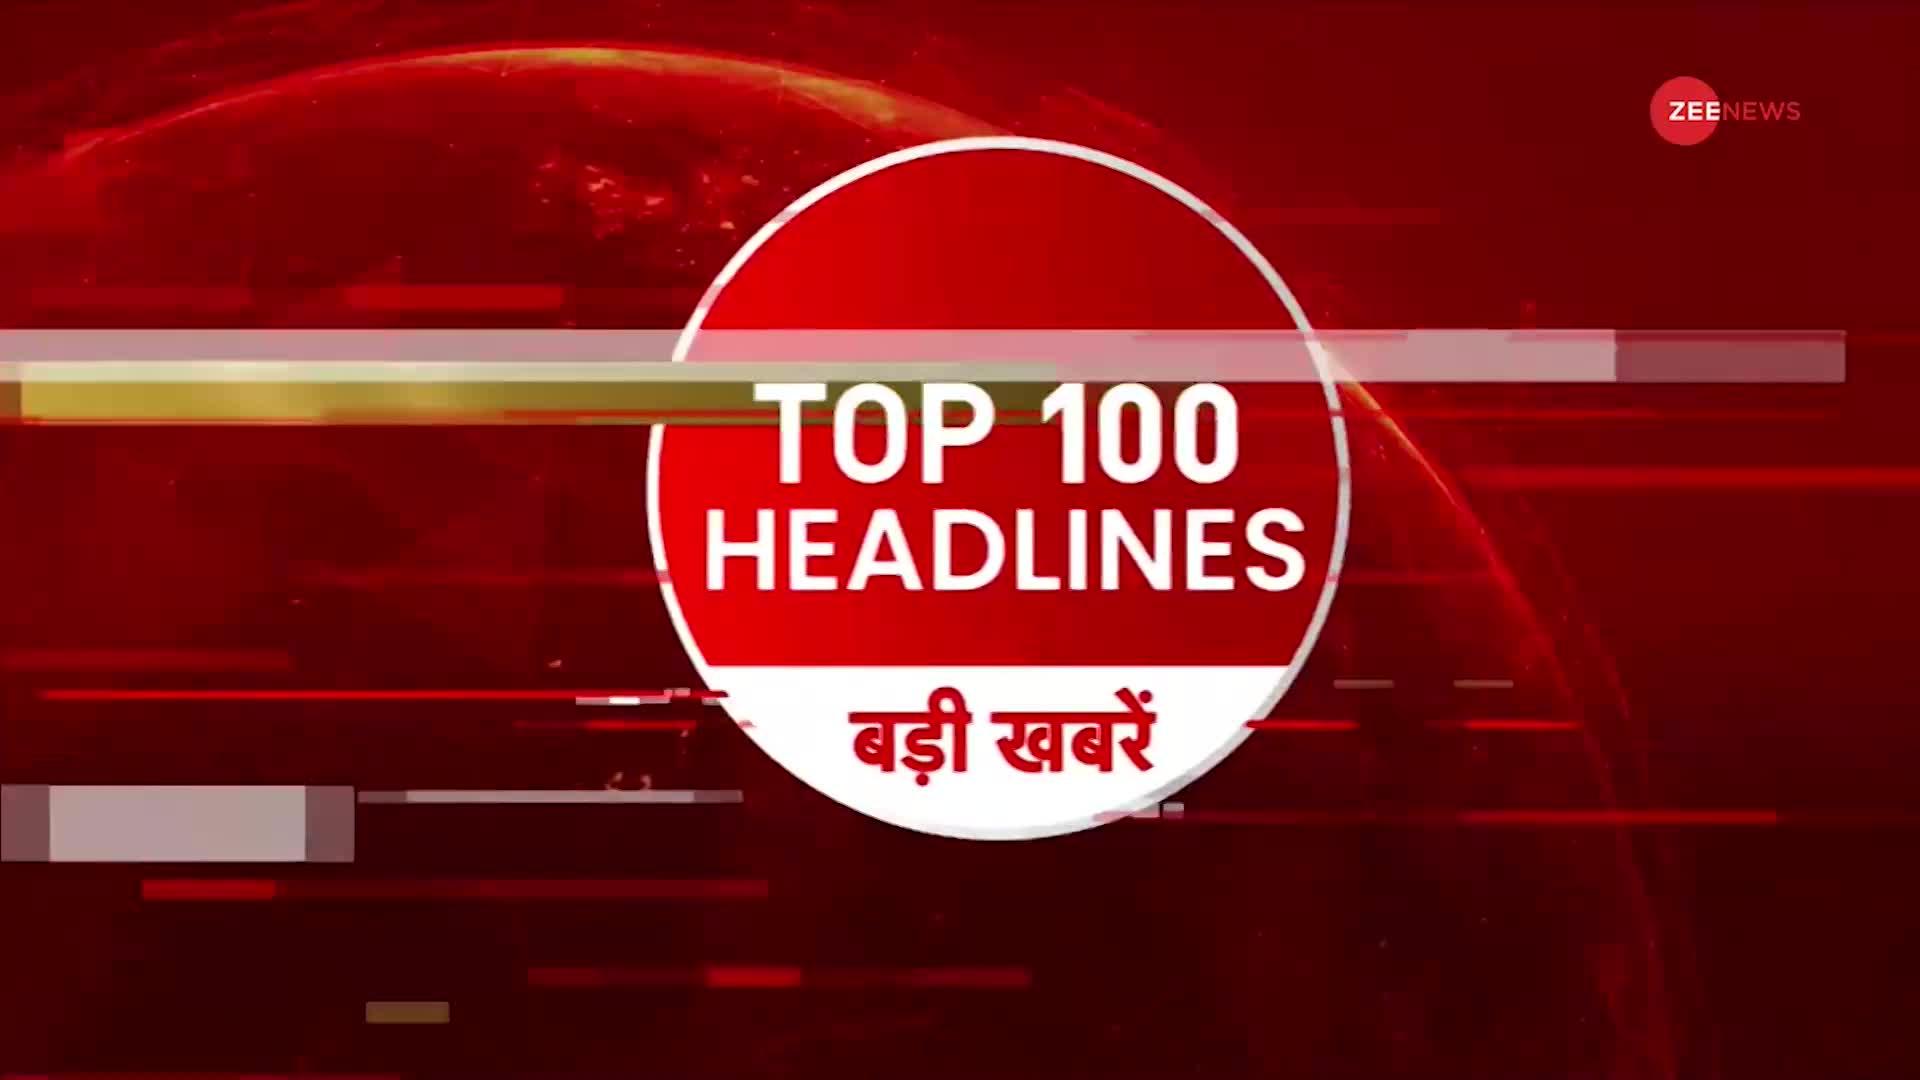 TOP 100: सुबह की 100 बड़ी खबरें सुपरफास्ट अंदाज में